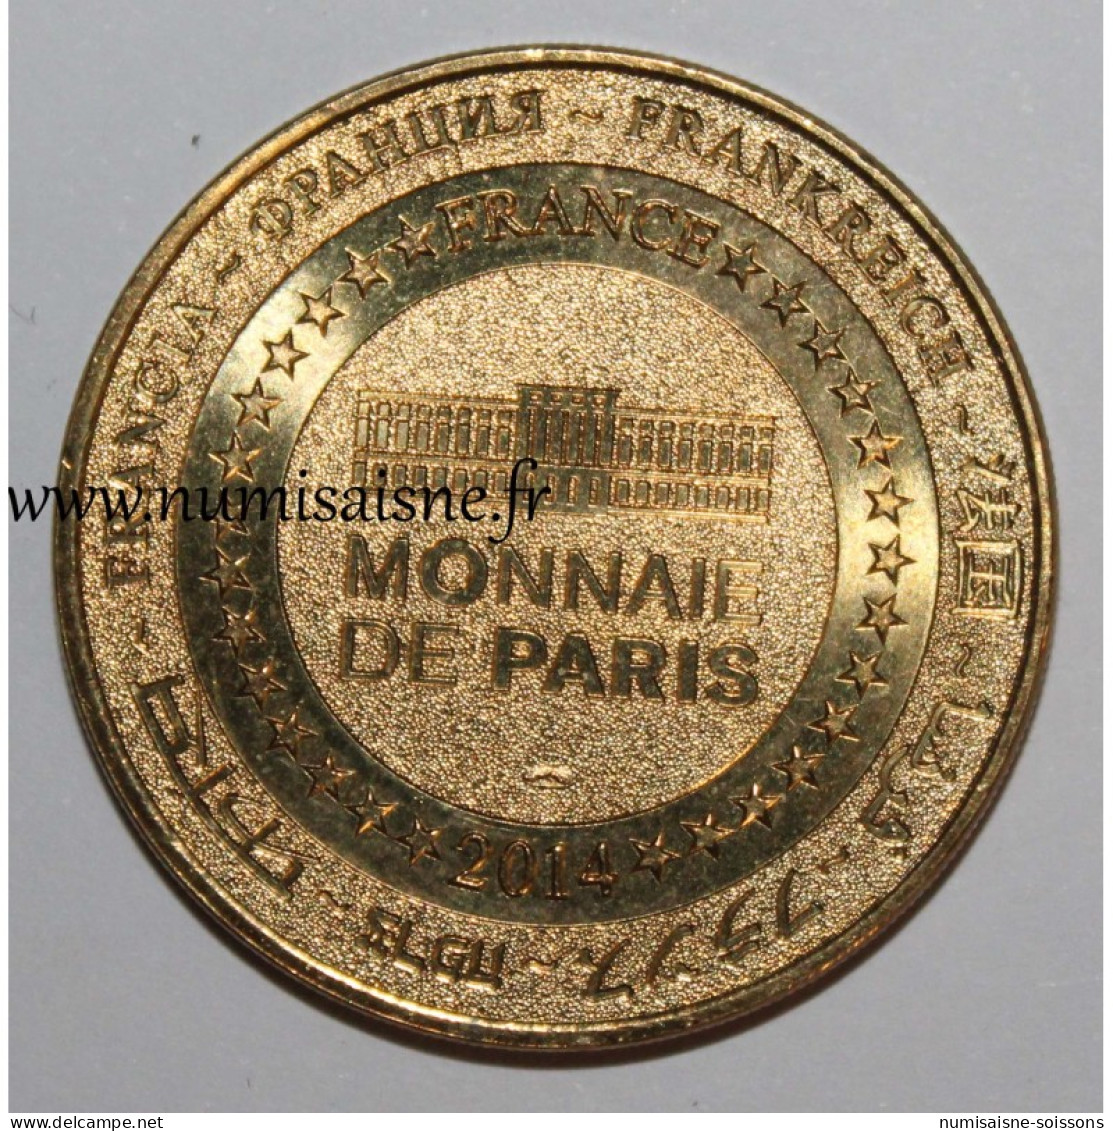 89 - SENS - 1ere CATHÉDRALE GOTHIQUE - 850 ANS - Monnaie De Paris - 2014 - 2014